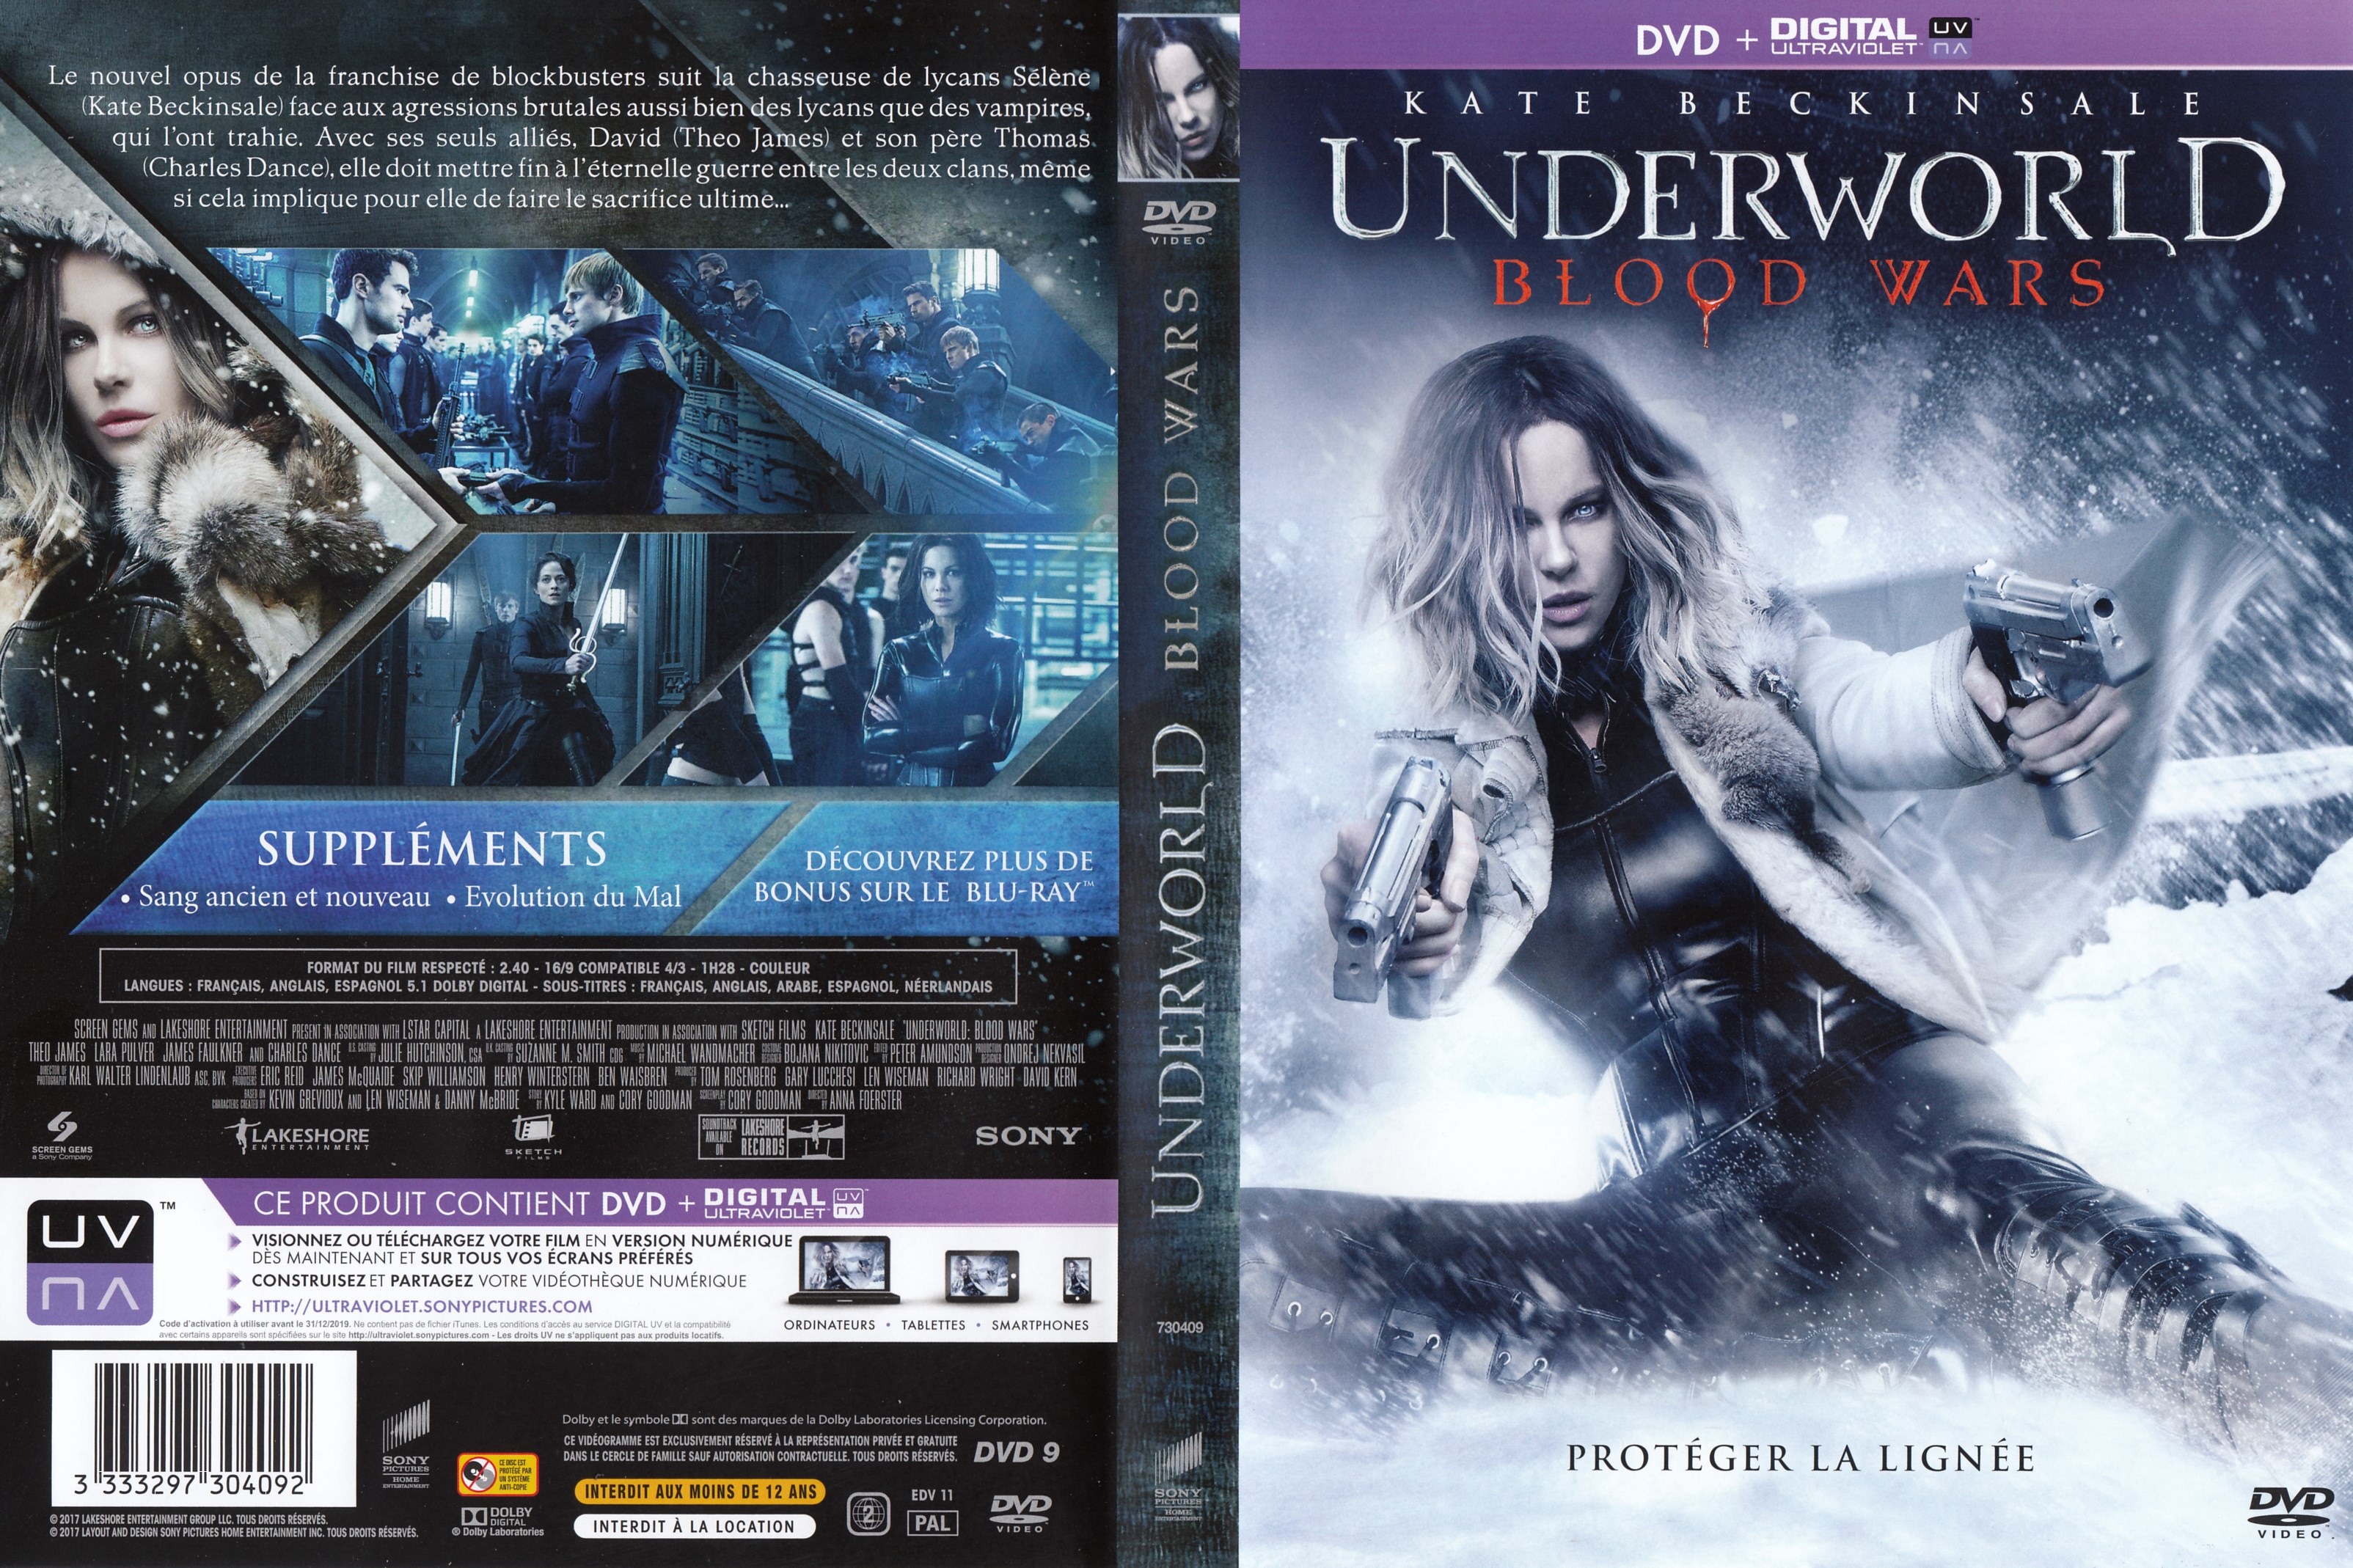 Jaquette DVD Underworld Blood Wars